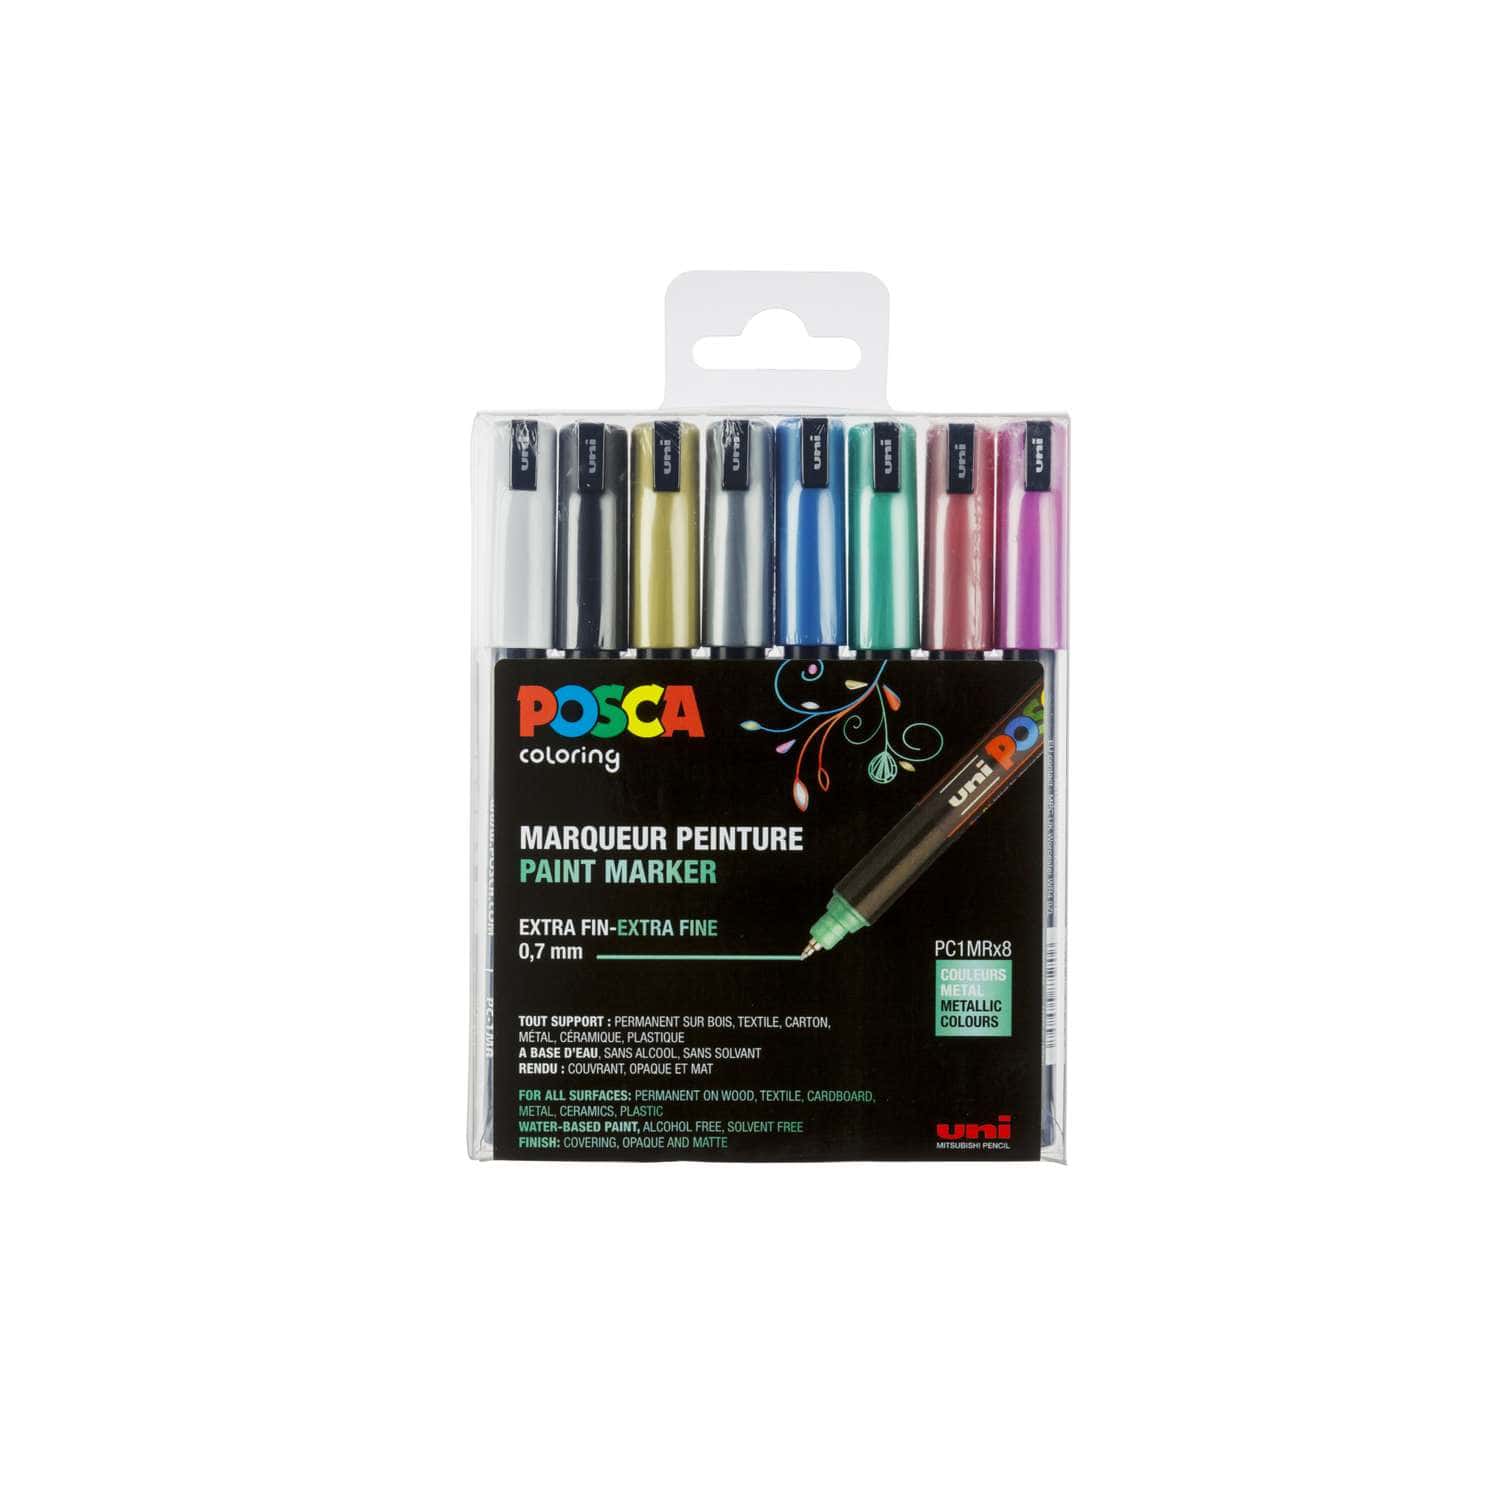 Uni-ball marqueur peinture à l'eau Posca PC-1MR, noir